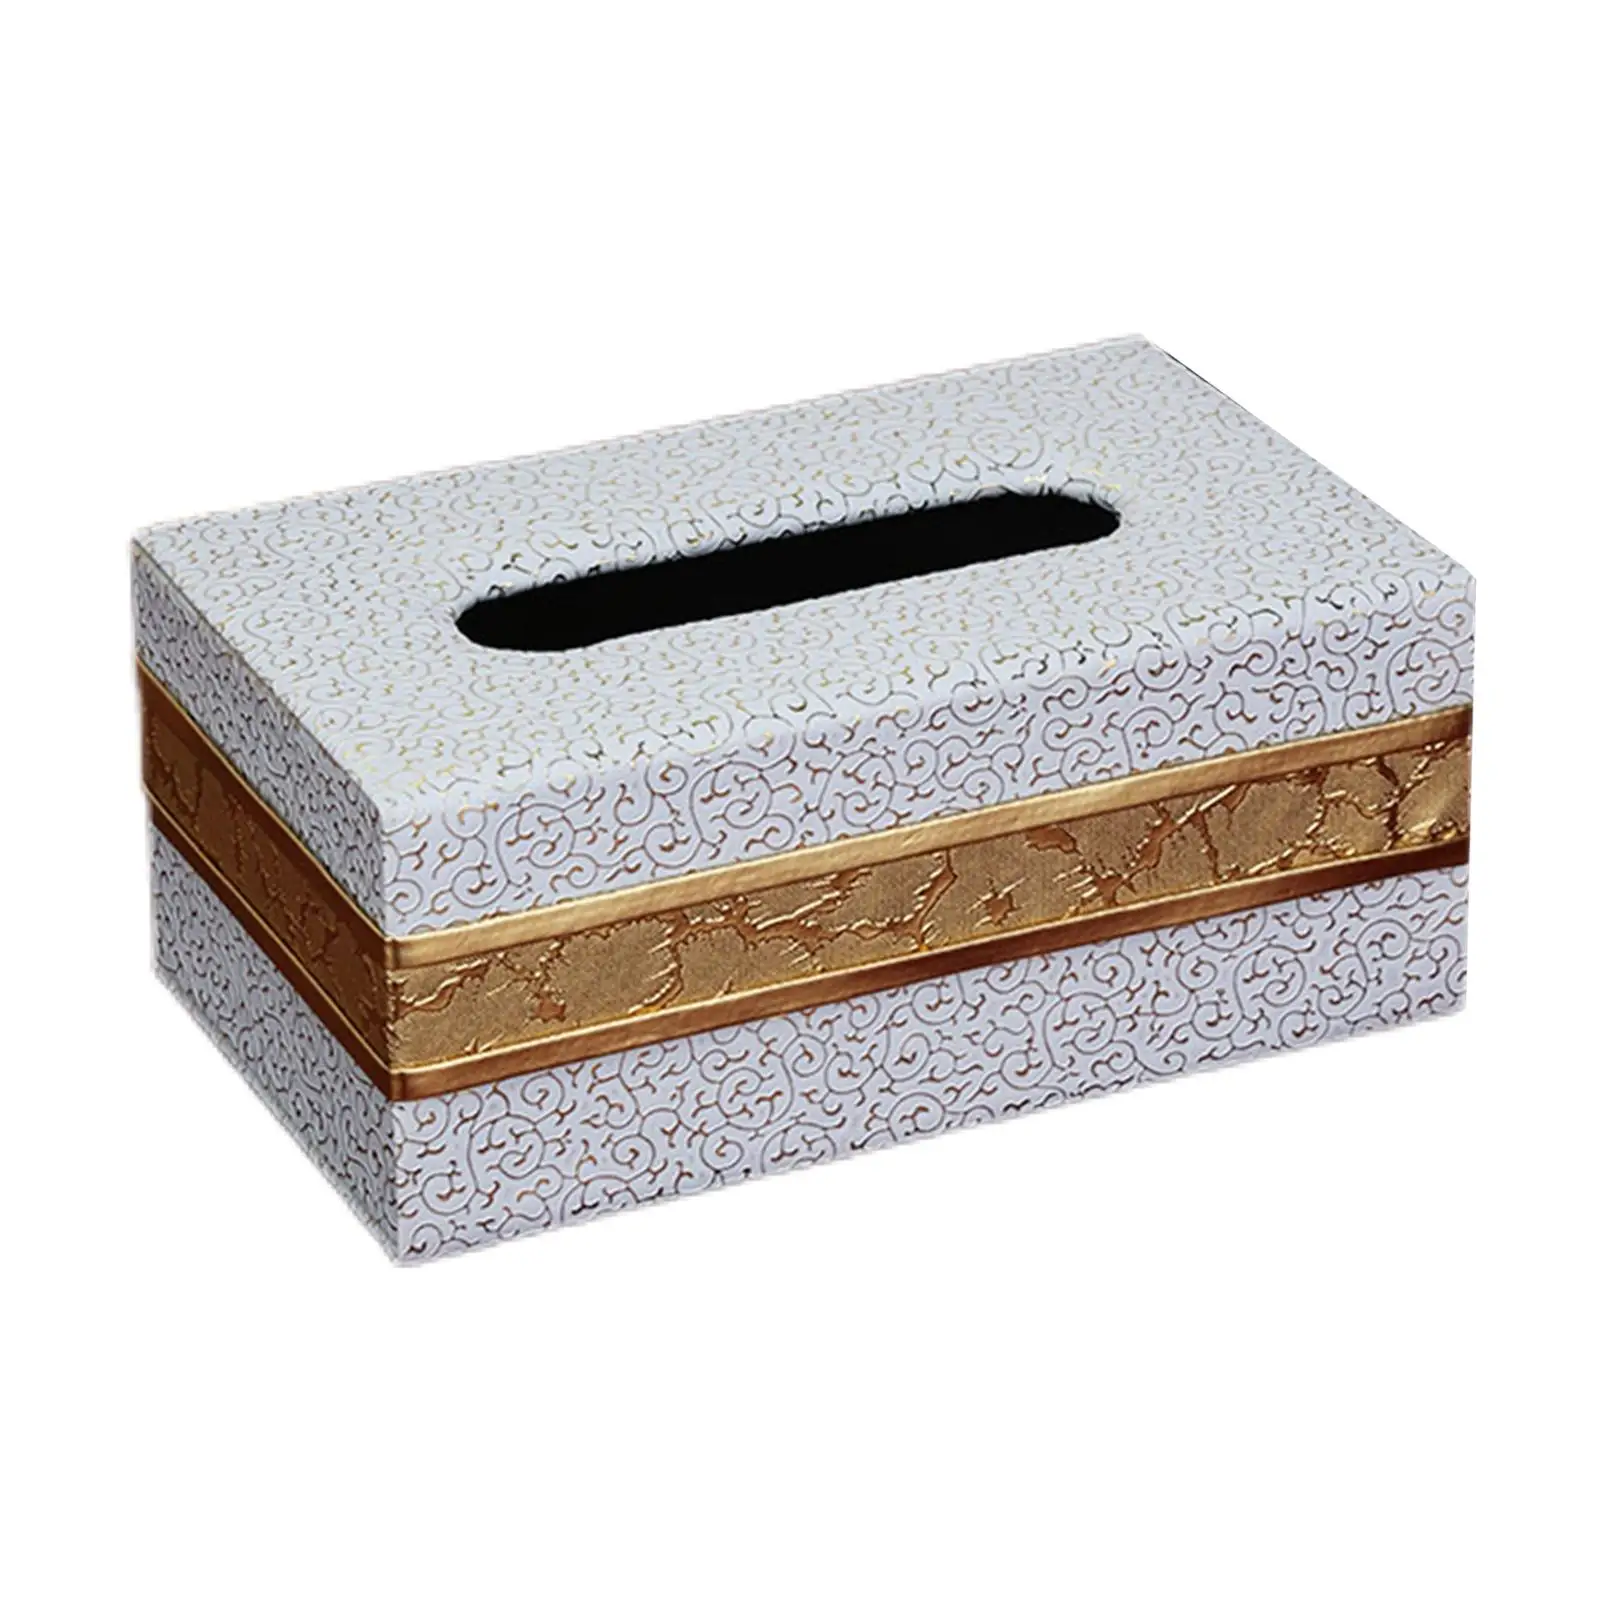 Rectangular Tissue Box Cover Napkin Dispenser for Hotel Vanity Countertop